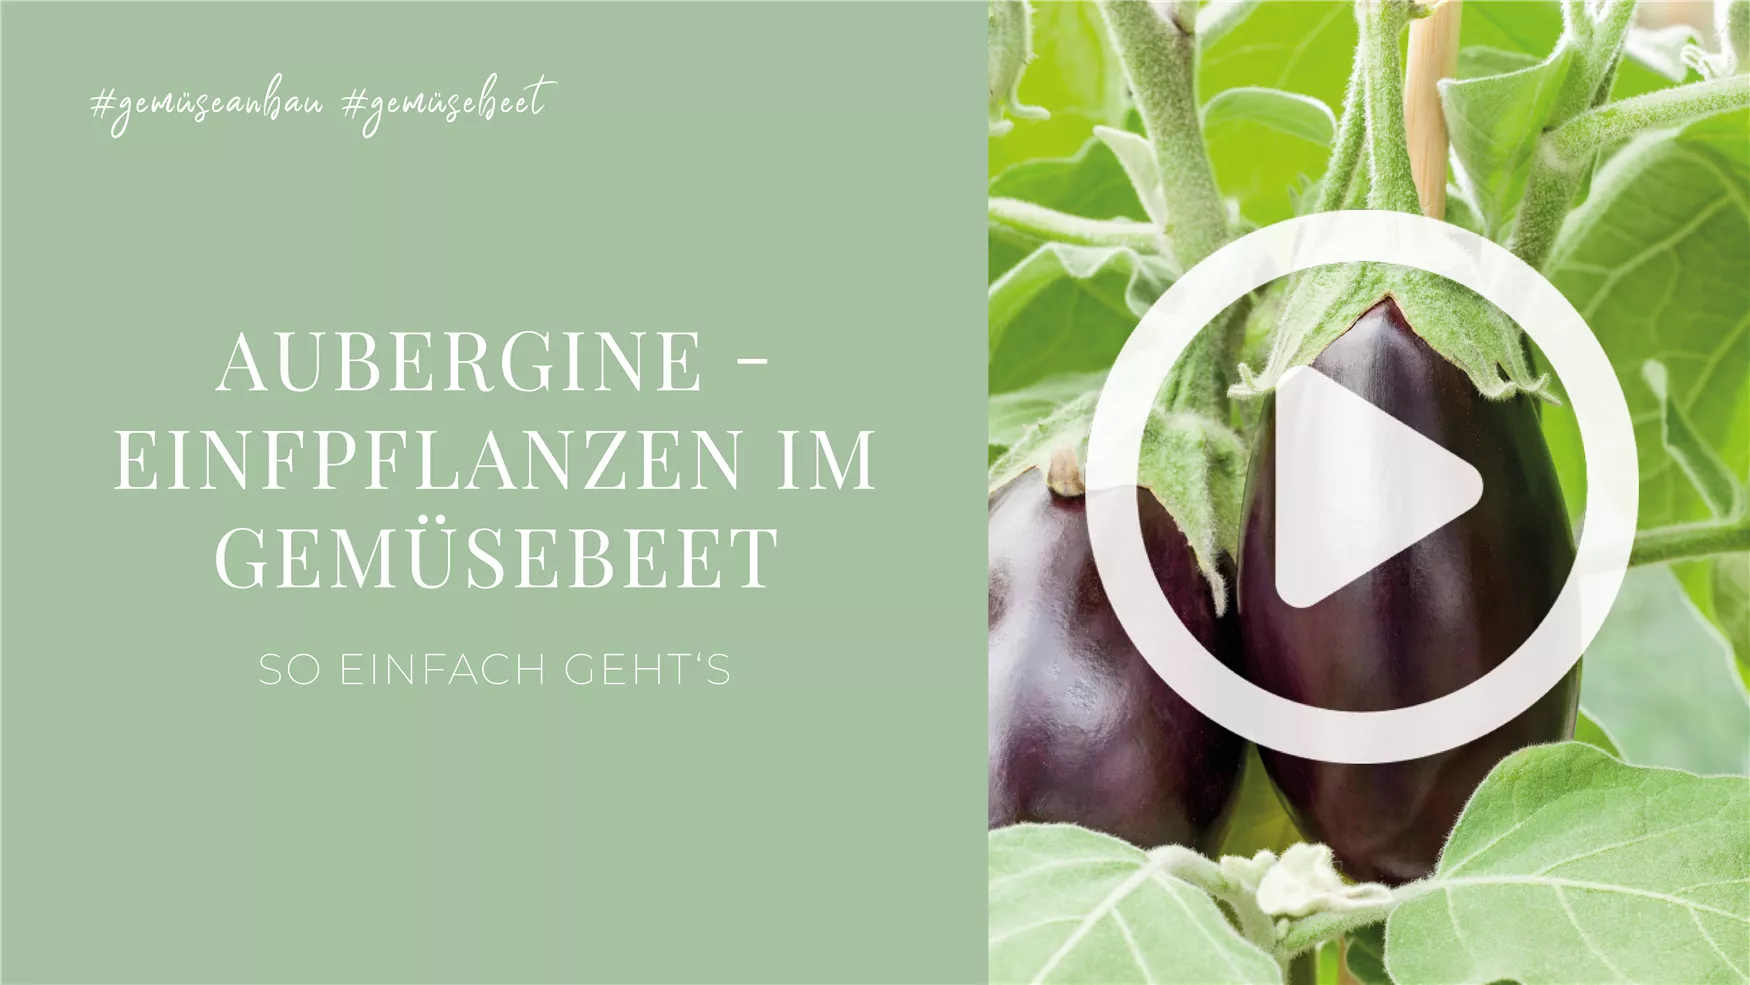 Aubergine - Einfpflanzen im Gemüsebeet